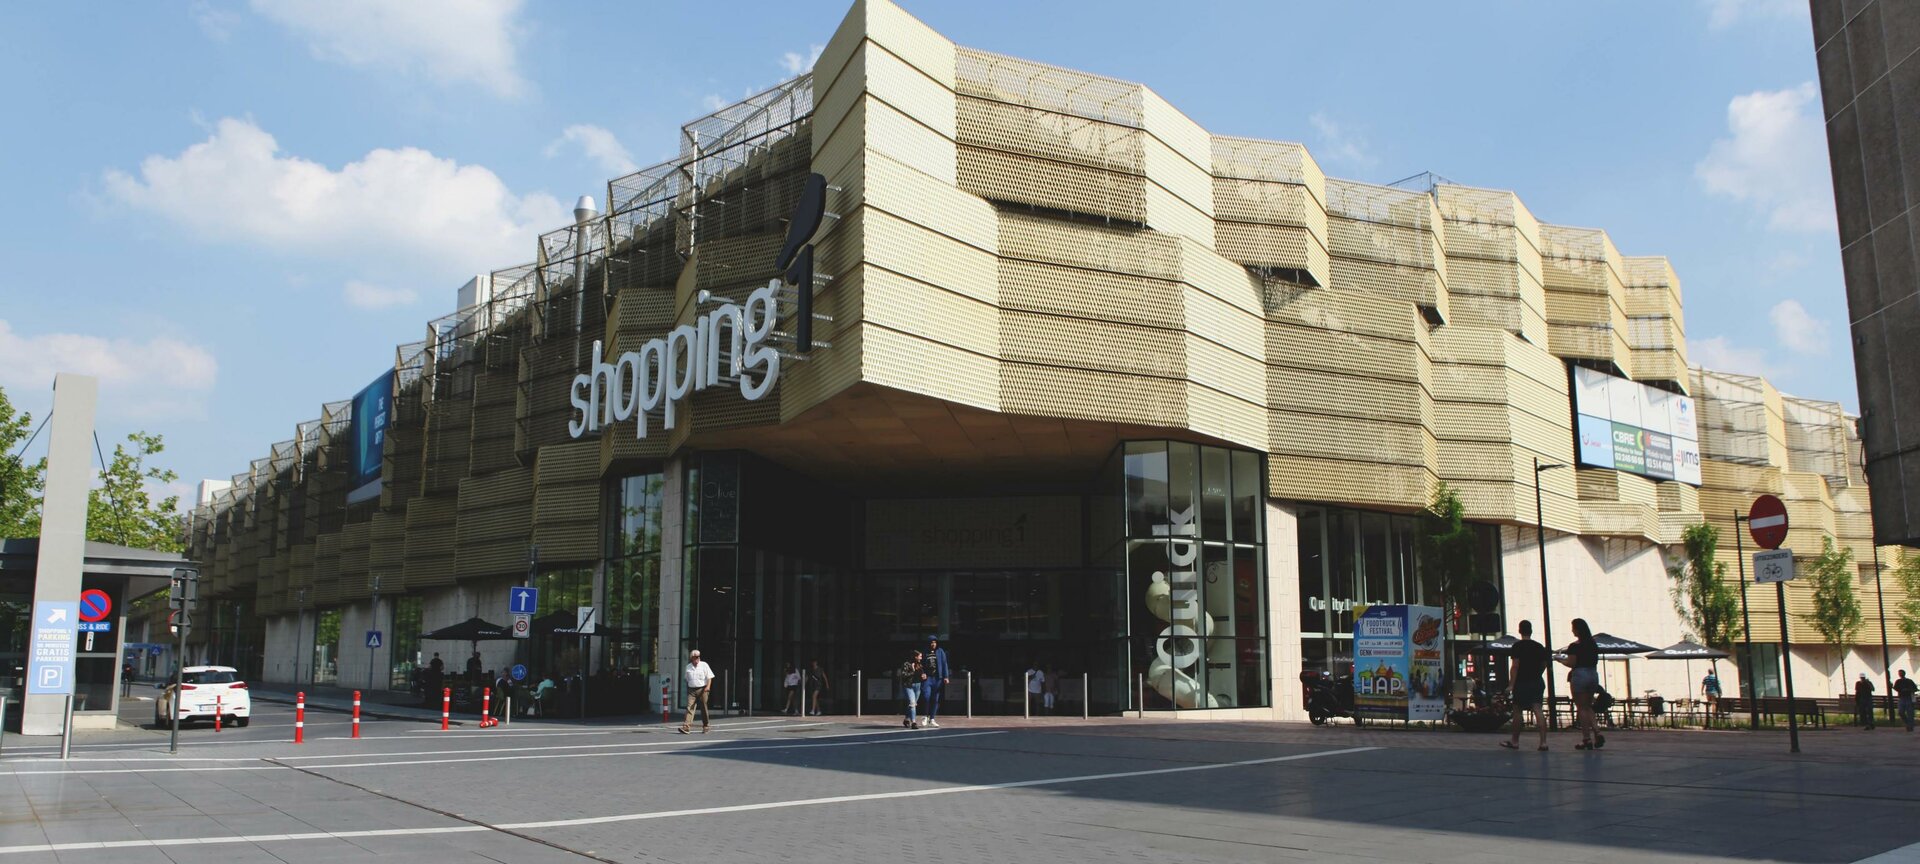 Shopping 1 - Shopping 1